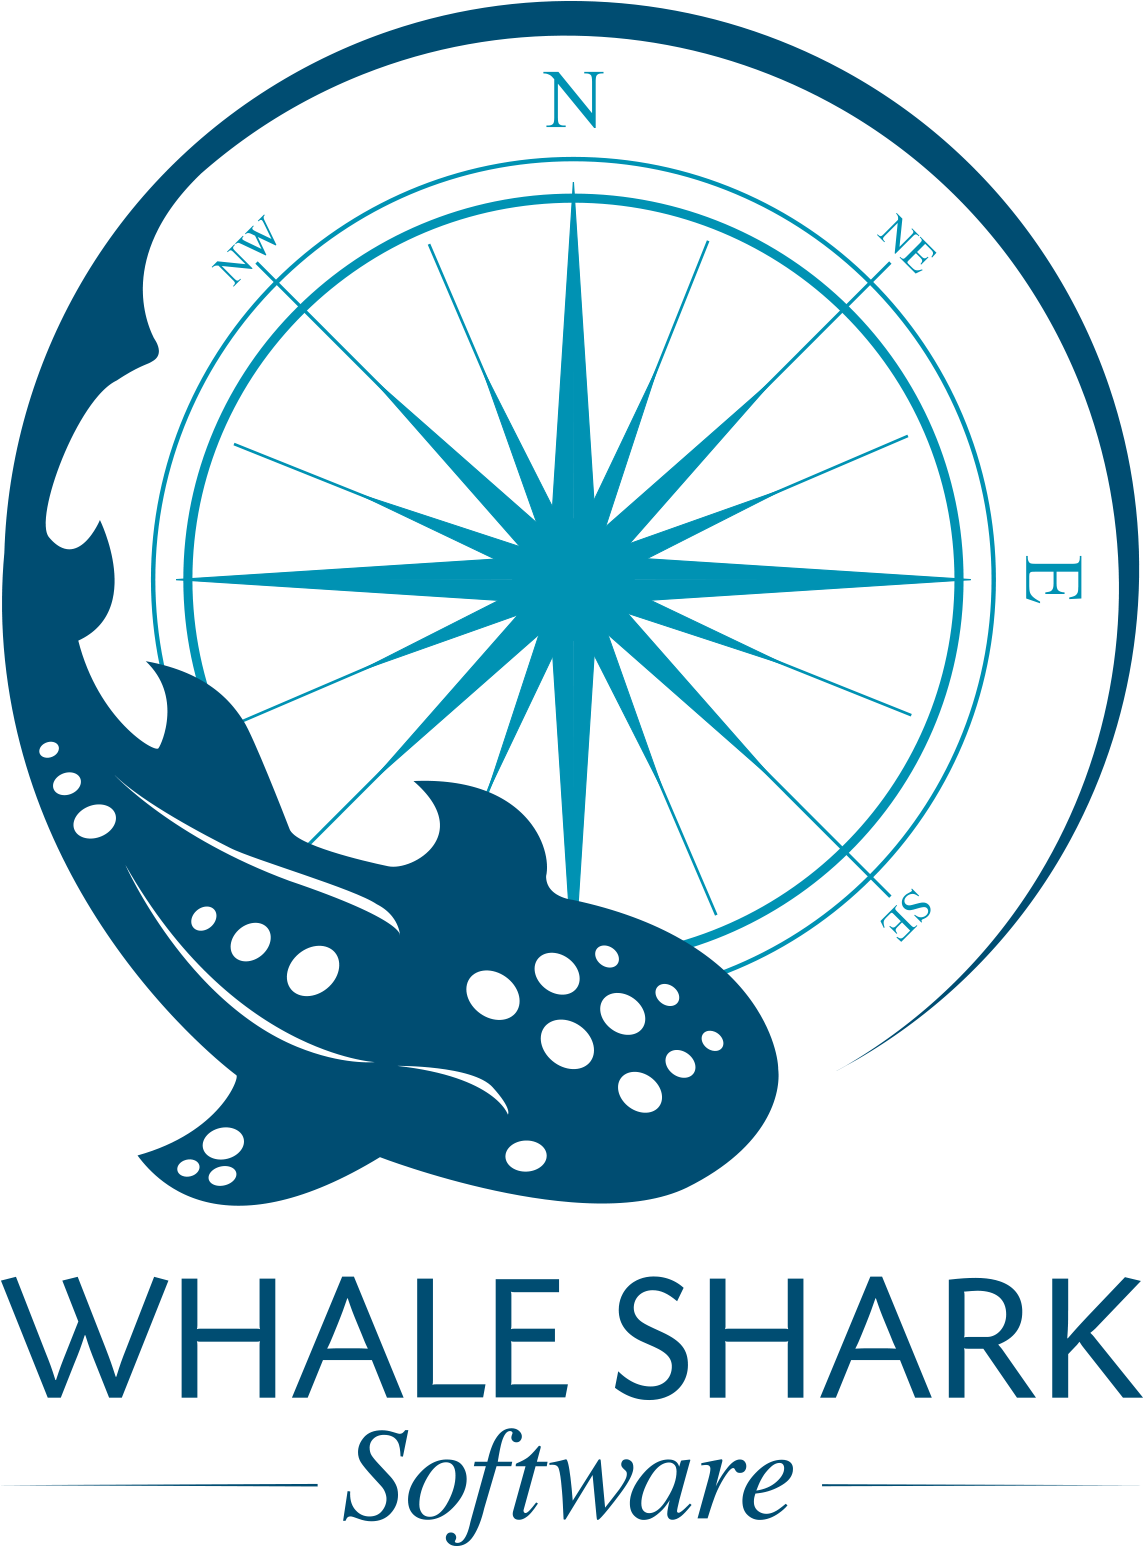 Whale Shark Software - Business (1200x1631)